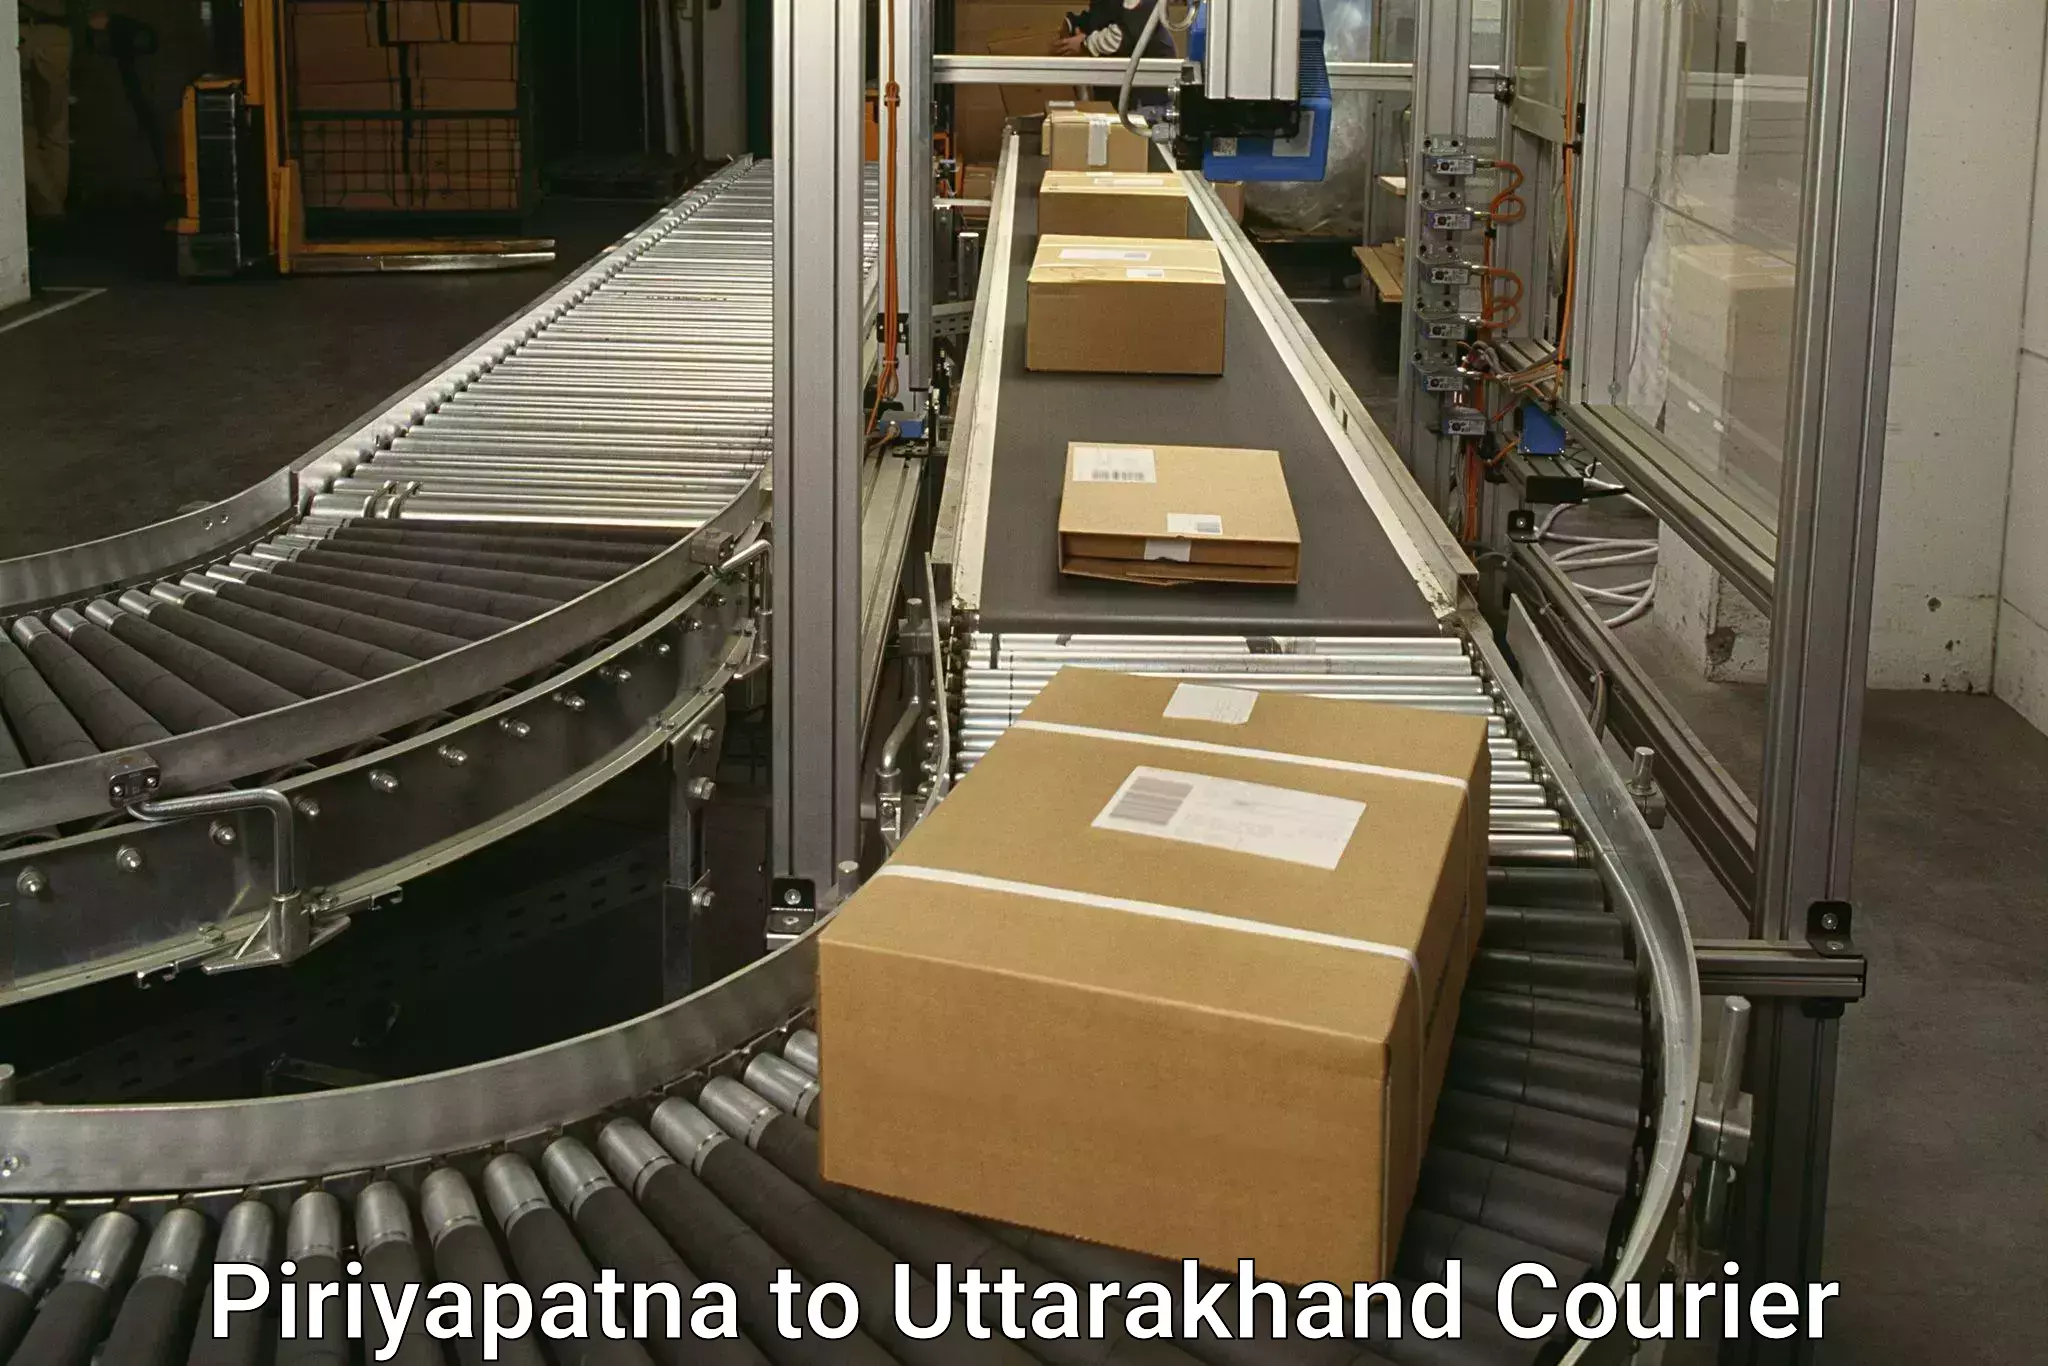 Smart shipping technology Piriyapatna to Uttarakhand